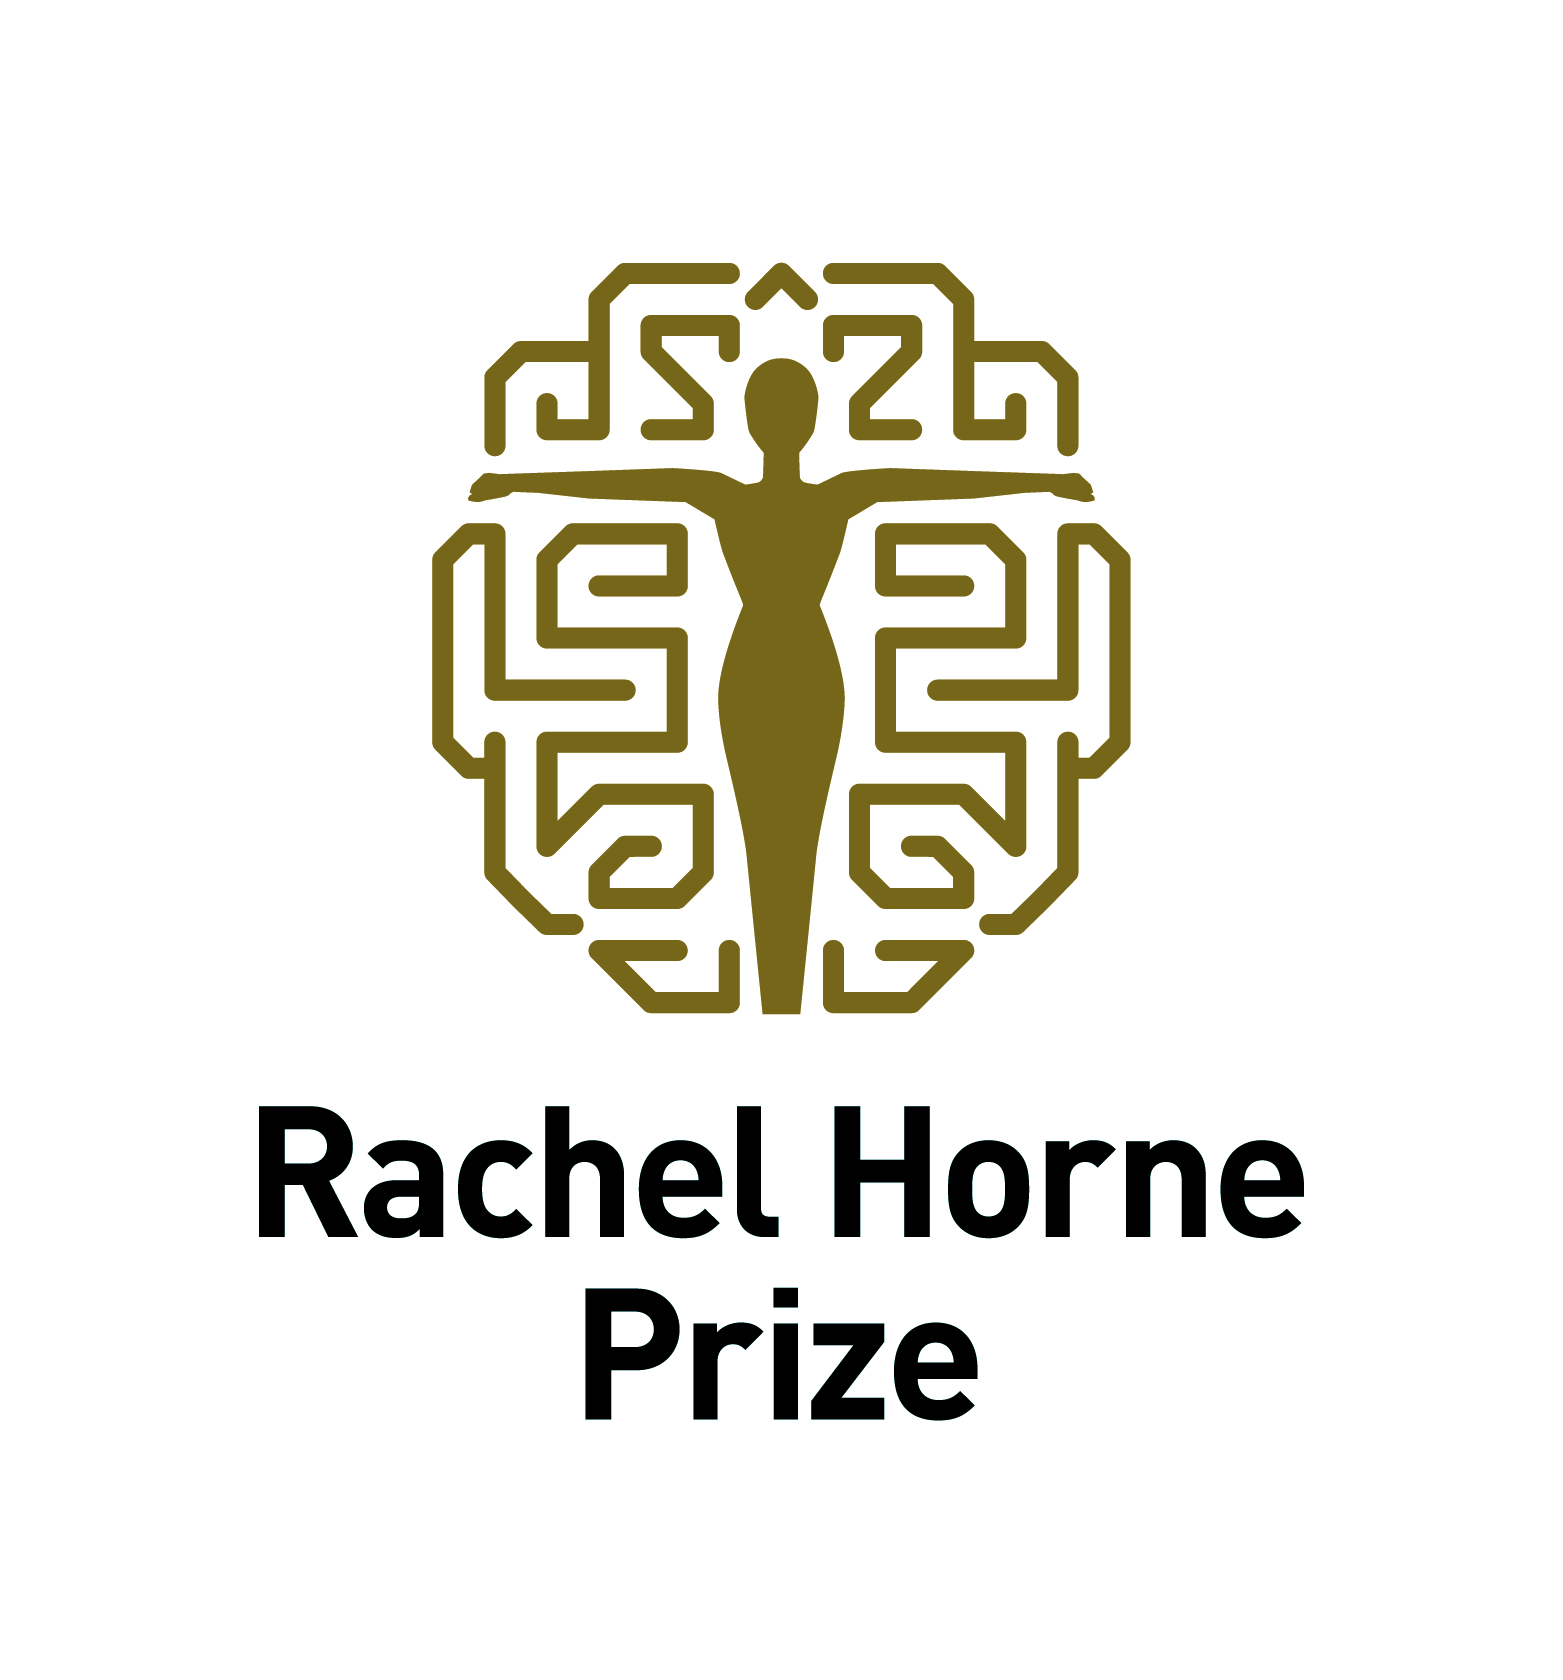 Rachel Horne Prize